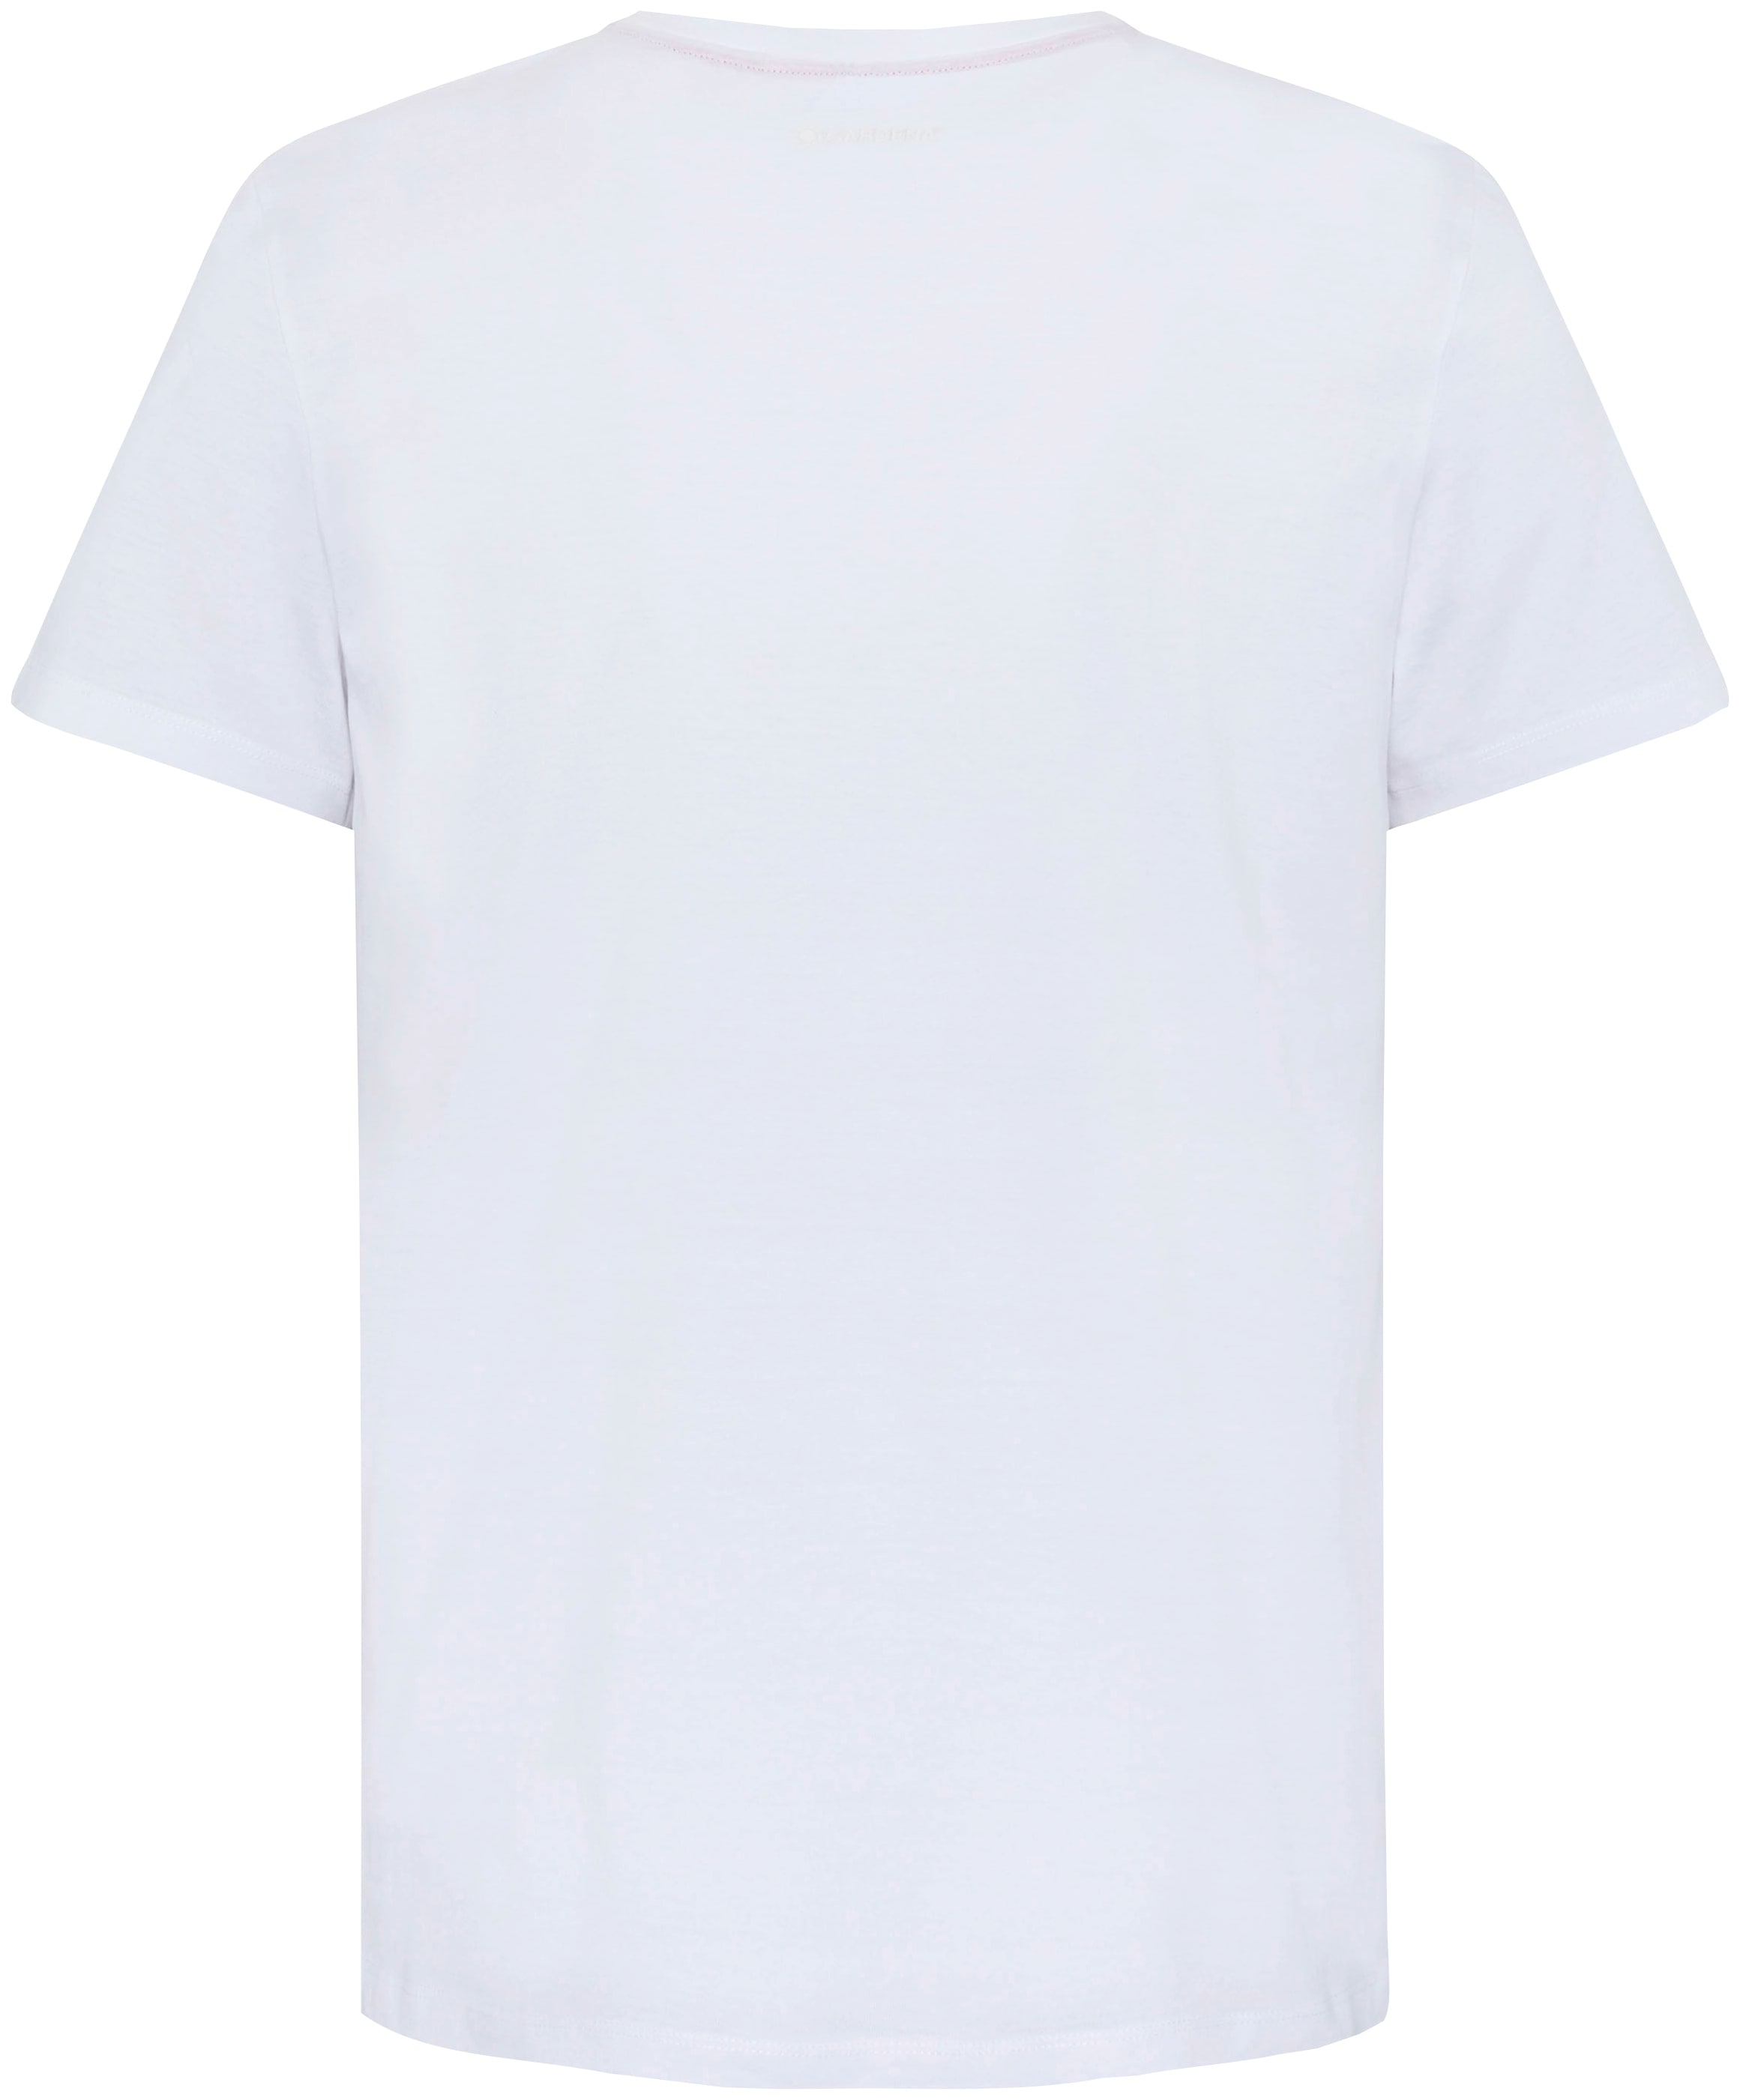 GARDENA T-Shirt »Bright White«, mit Gardena-Logodruck